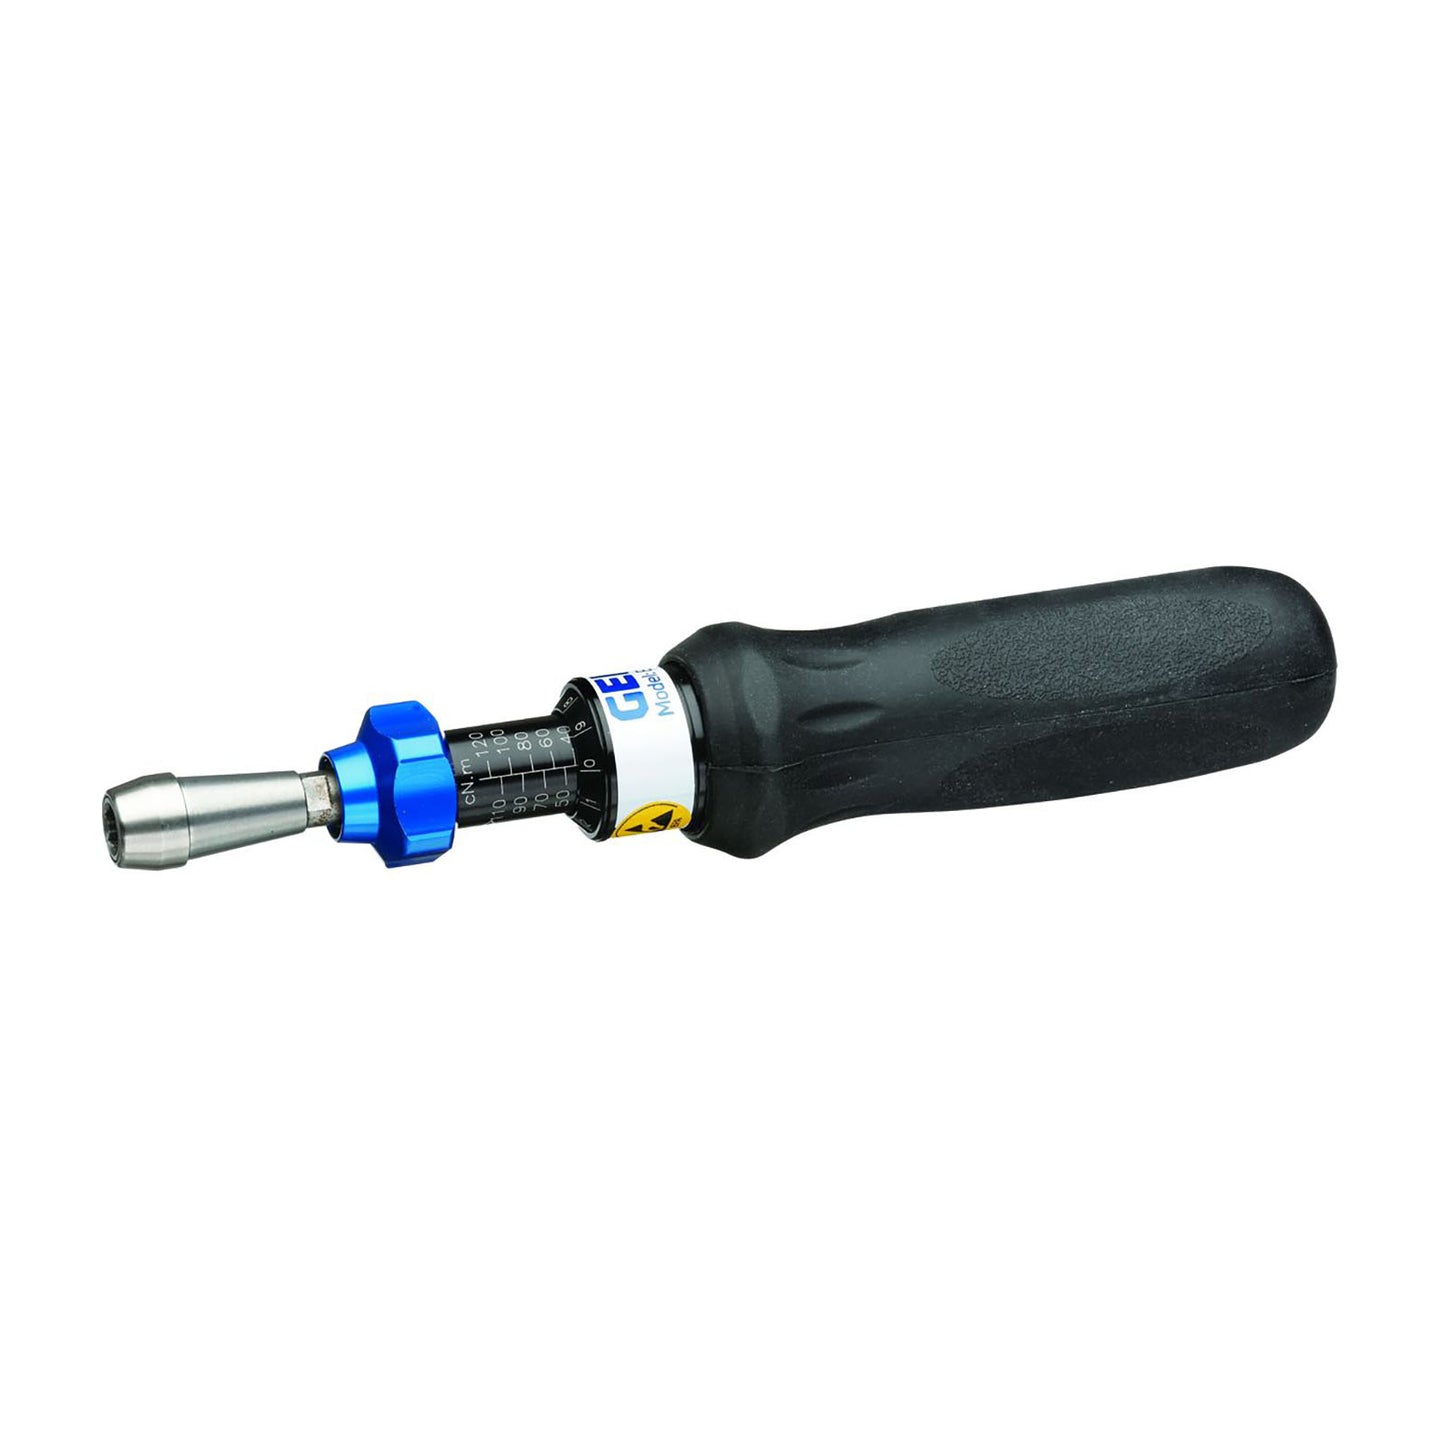 Gedore 756-06 - S 1/4" 1-6 Nm dynamometric screwdriver